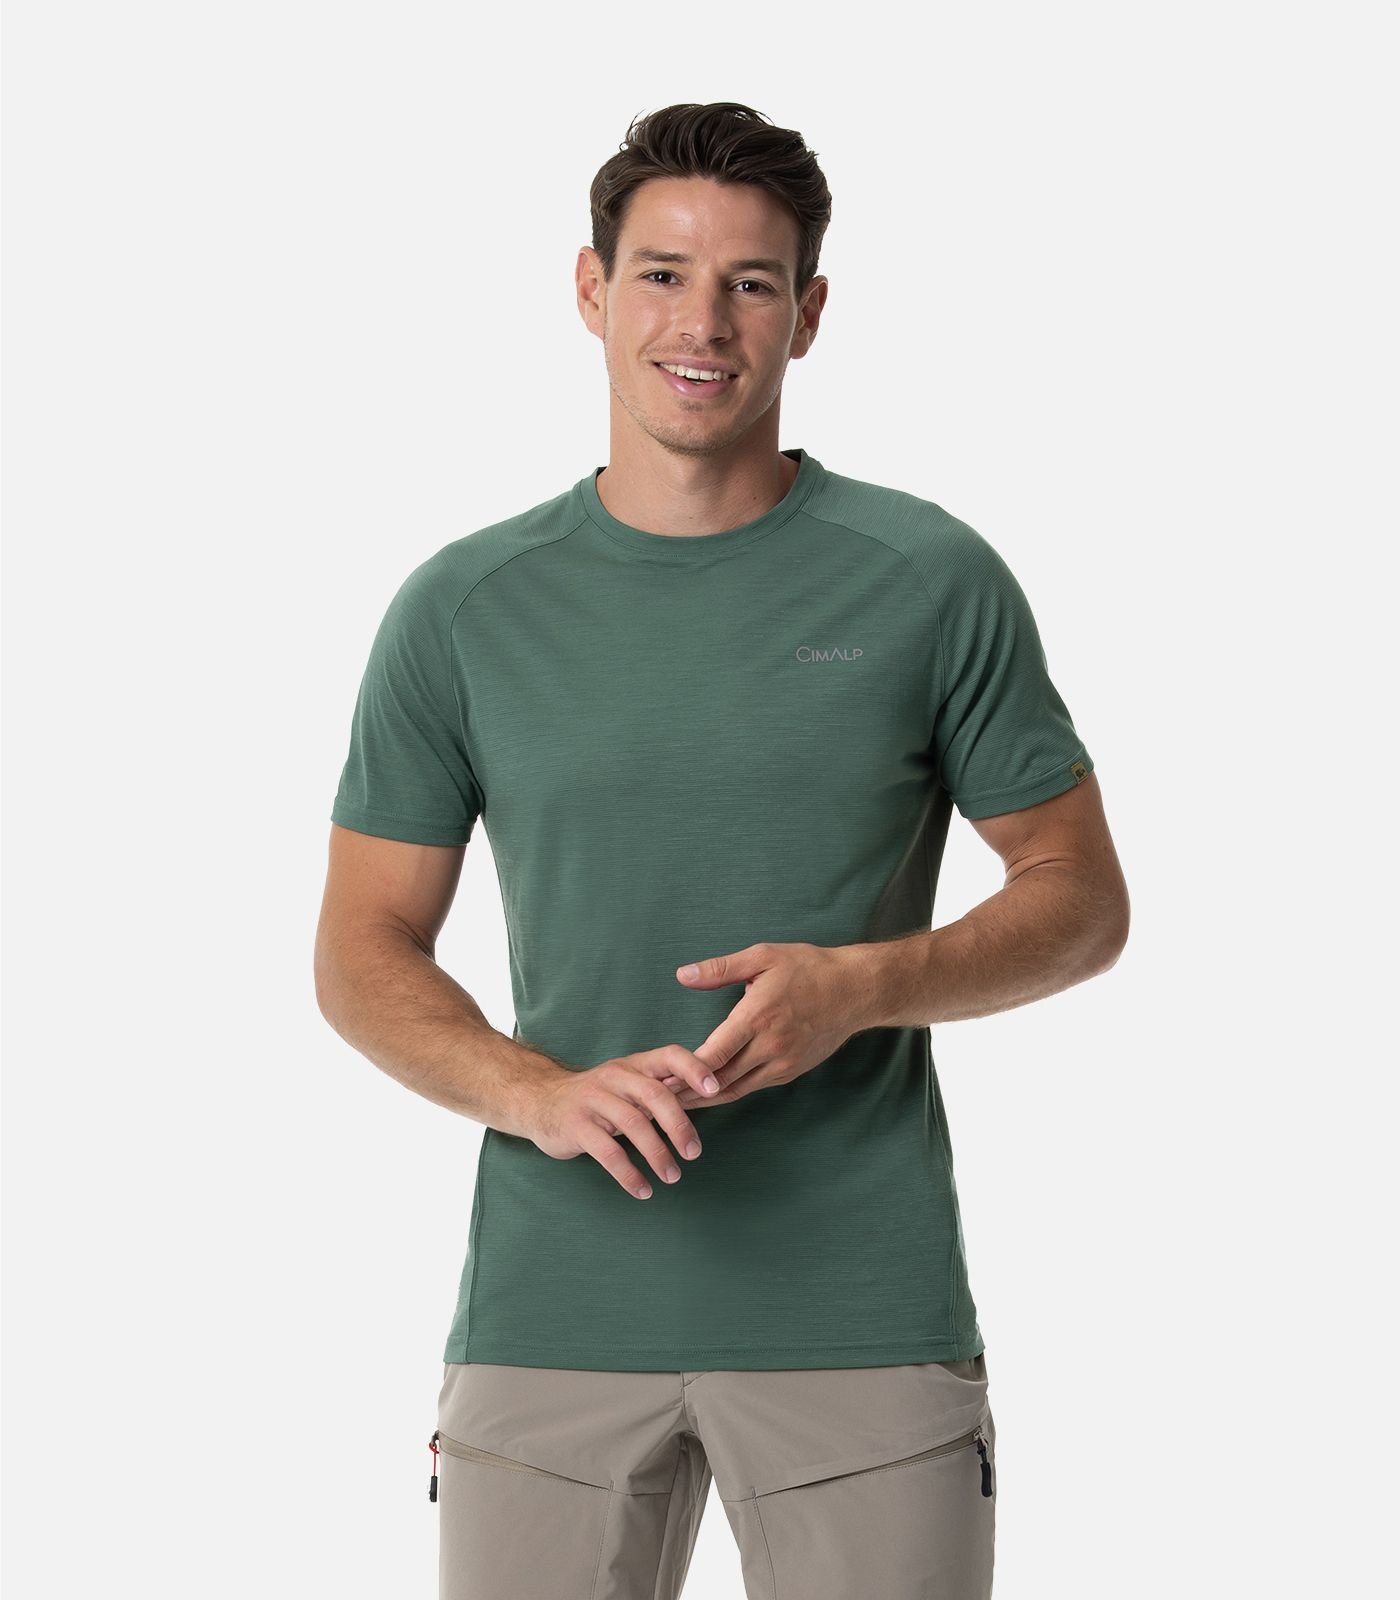 Merino Wool, short sleeved t-shirt